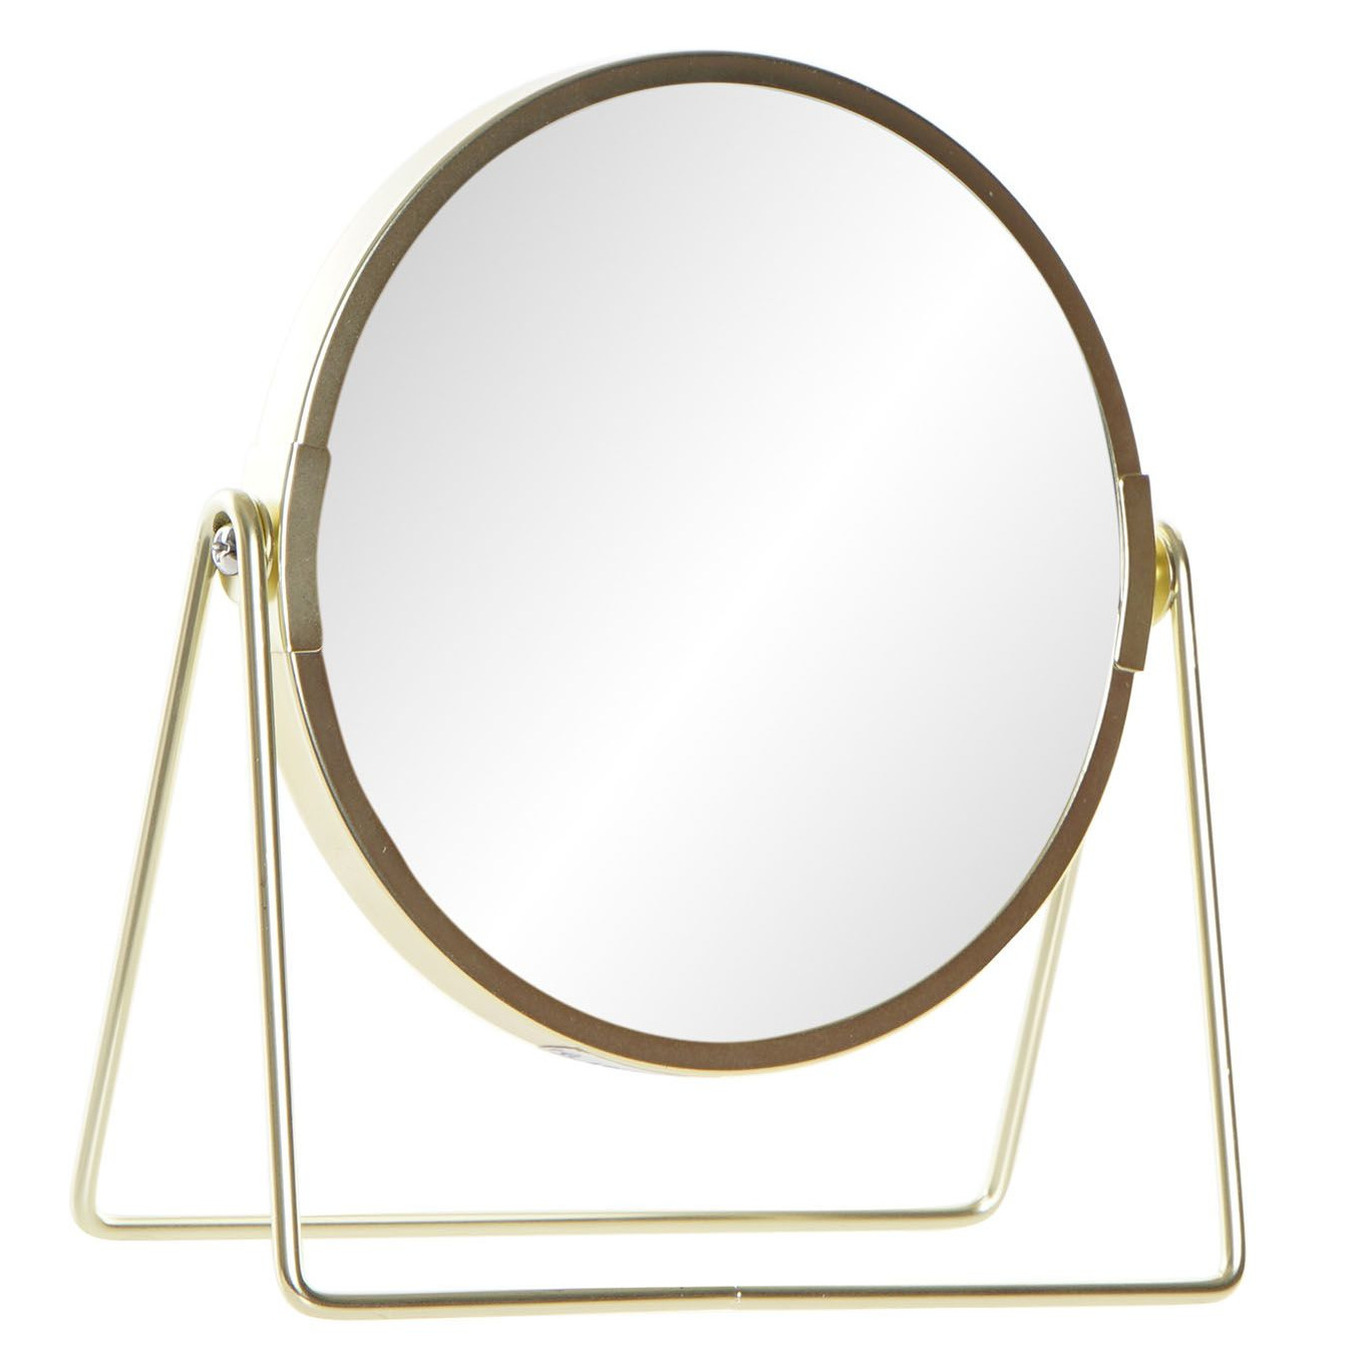 Badkamerspiegel-make-up spiegel rond dubbelzijdig RVS goud D15 x H21 cm